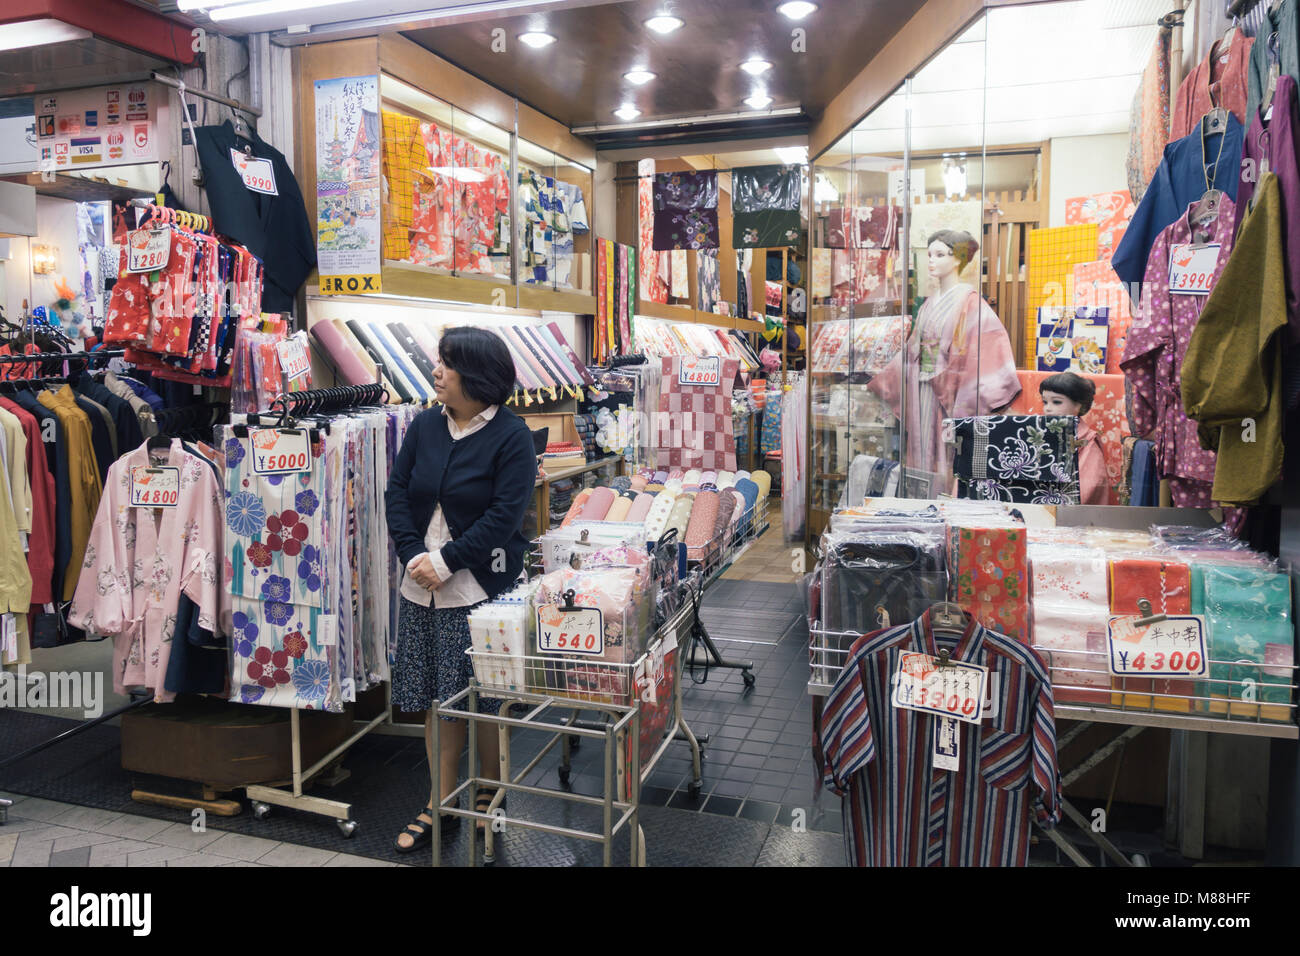 Magasin de vêtements japonais avec des vêtements traditionnels comme les kimonos dans la ville de Tokyo, Japon Banque D'Images